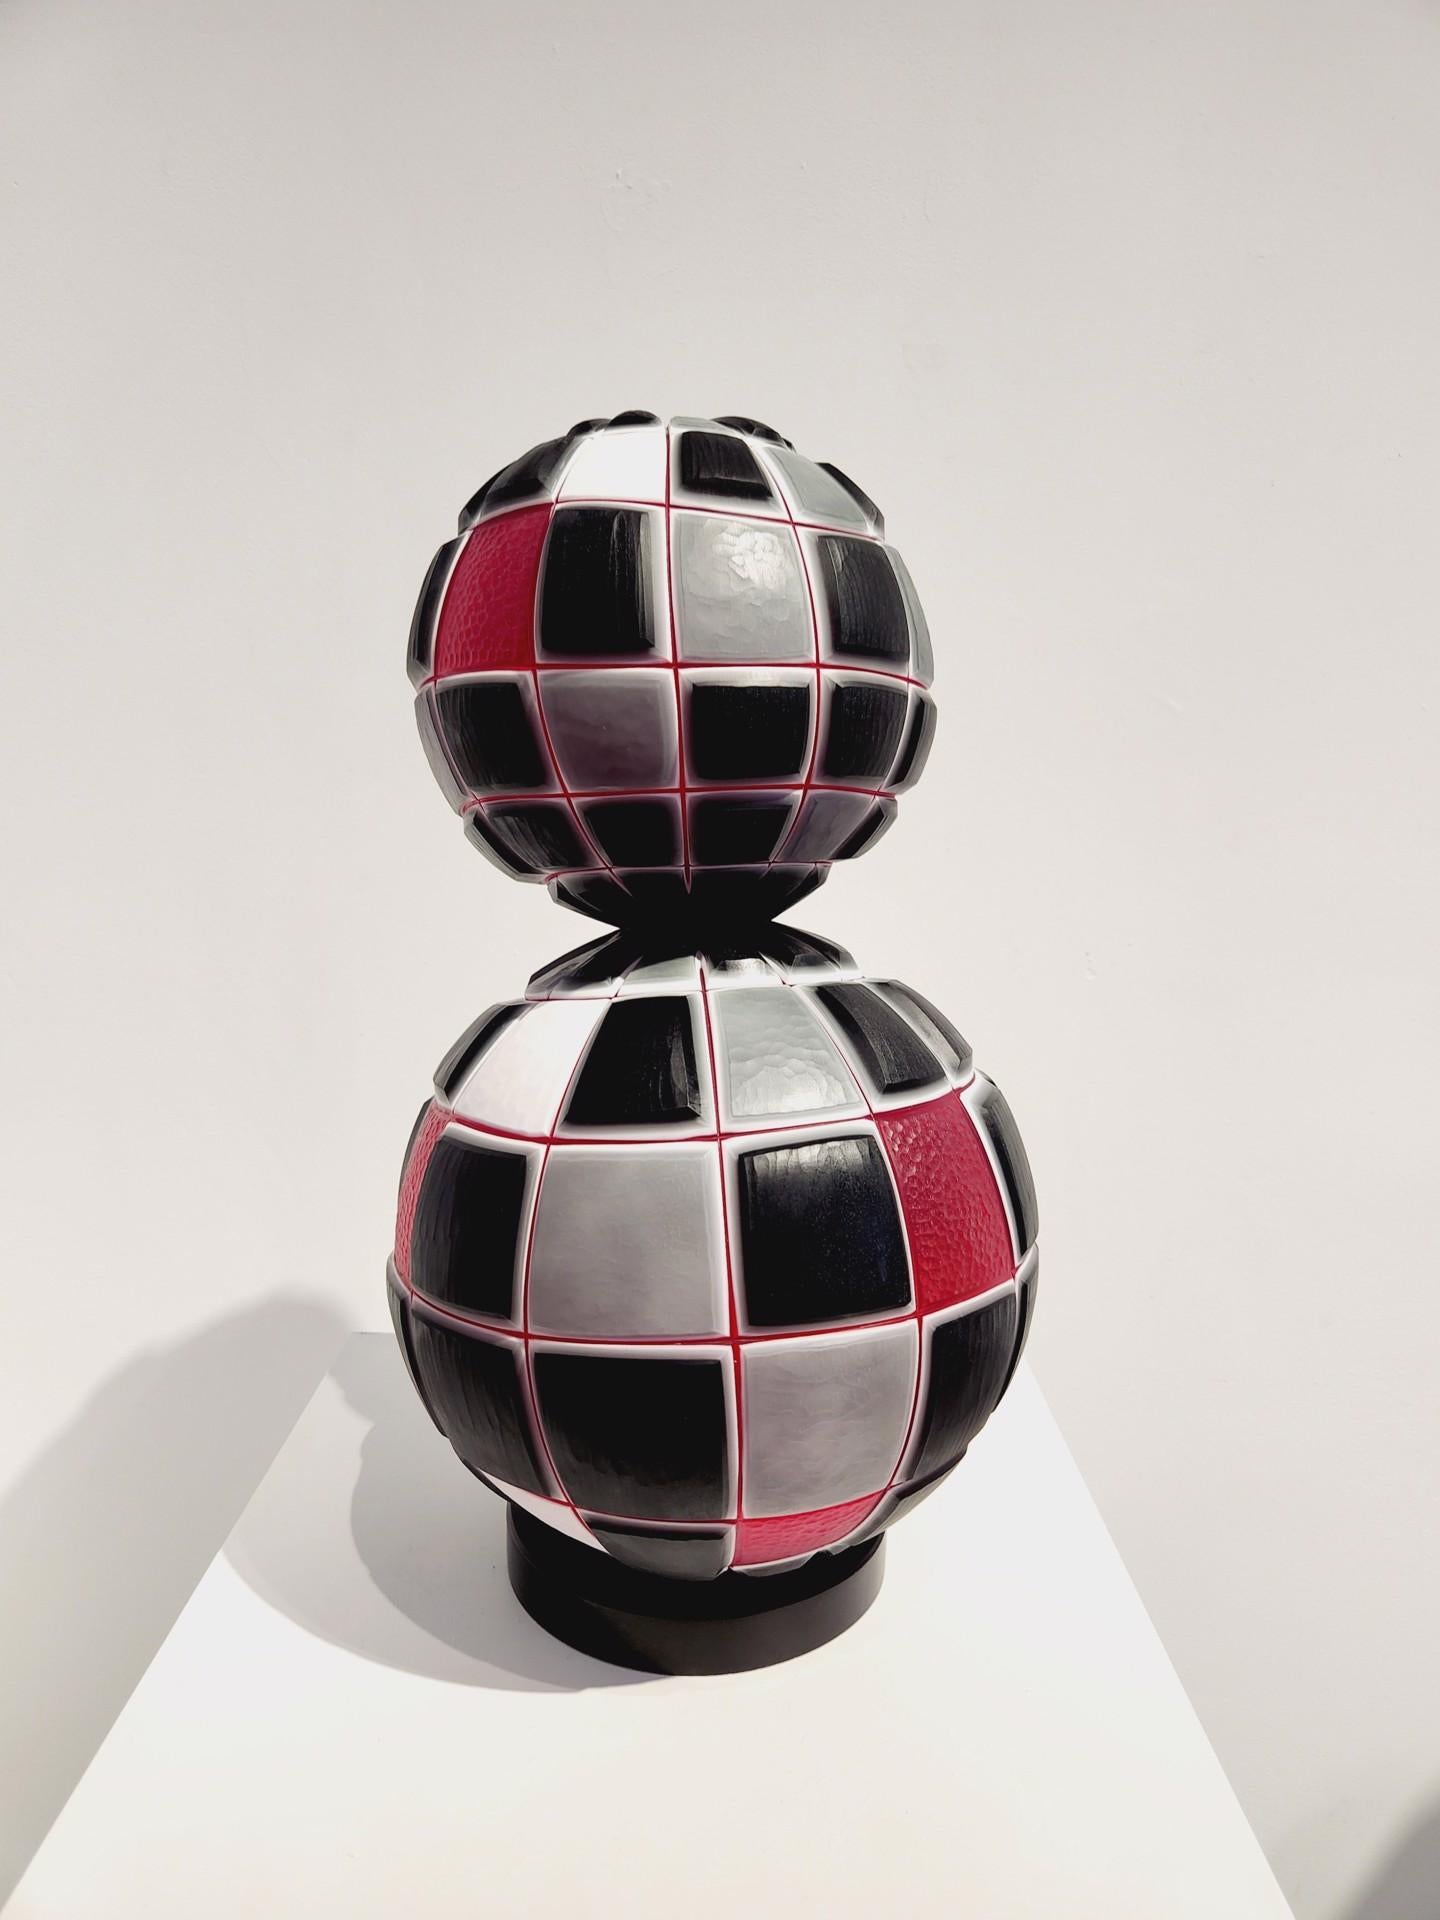 Pietro & Riccardo Ferro
2 Spheres- Murano Glass, 2019
Hand Blown and Hand Carved Murano glass - 4 Layers
